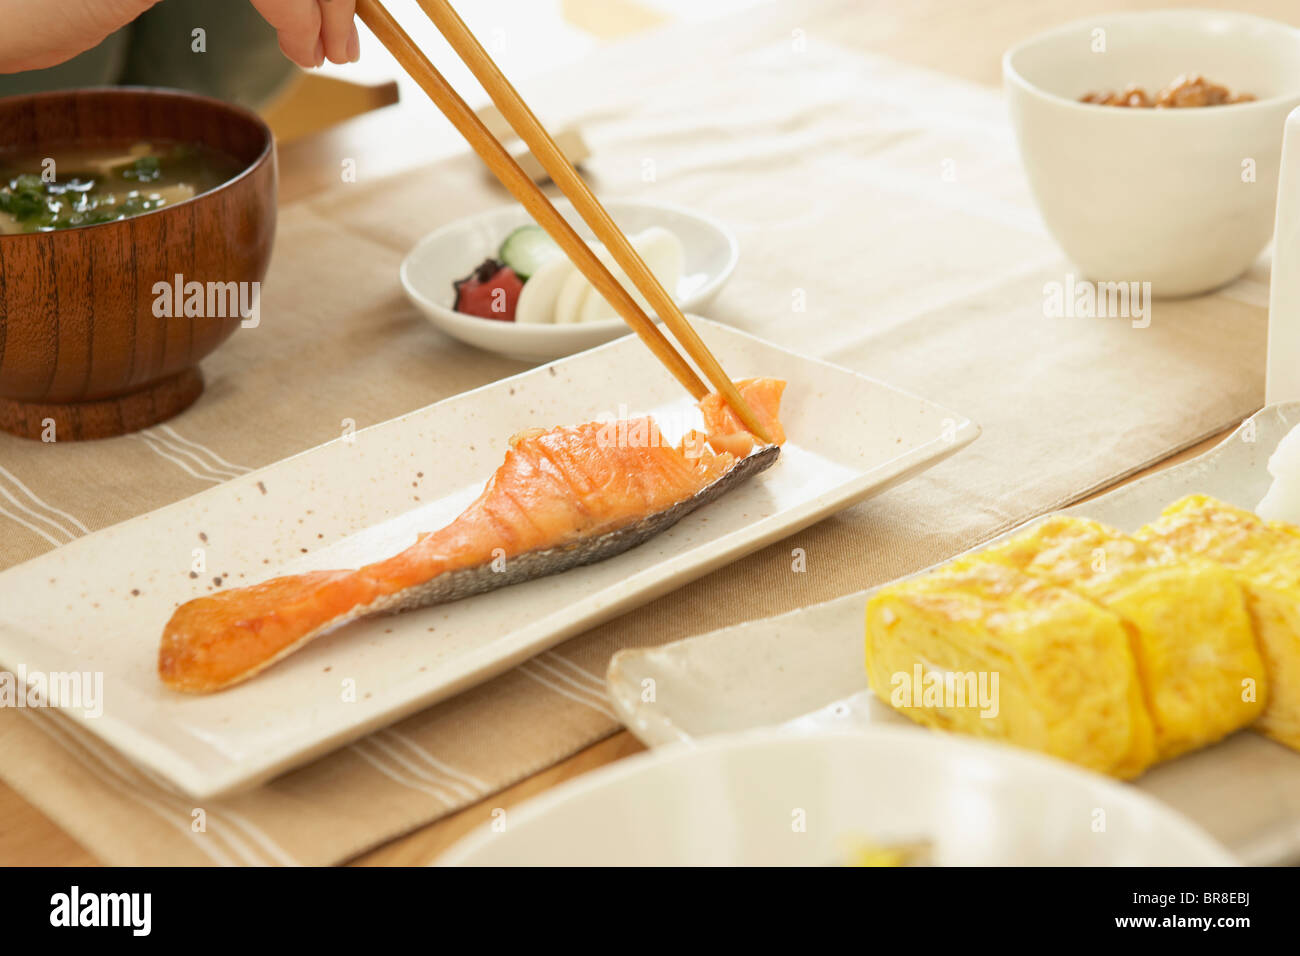 Un petit-déjeuner japonais Banque D'Images